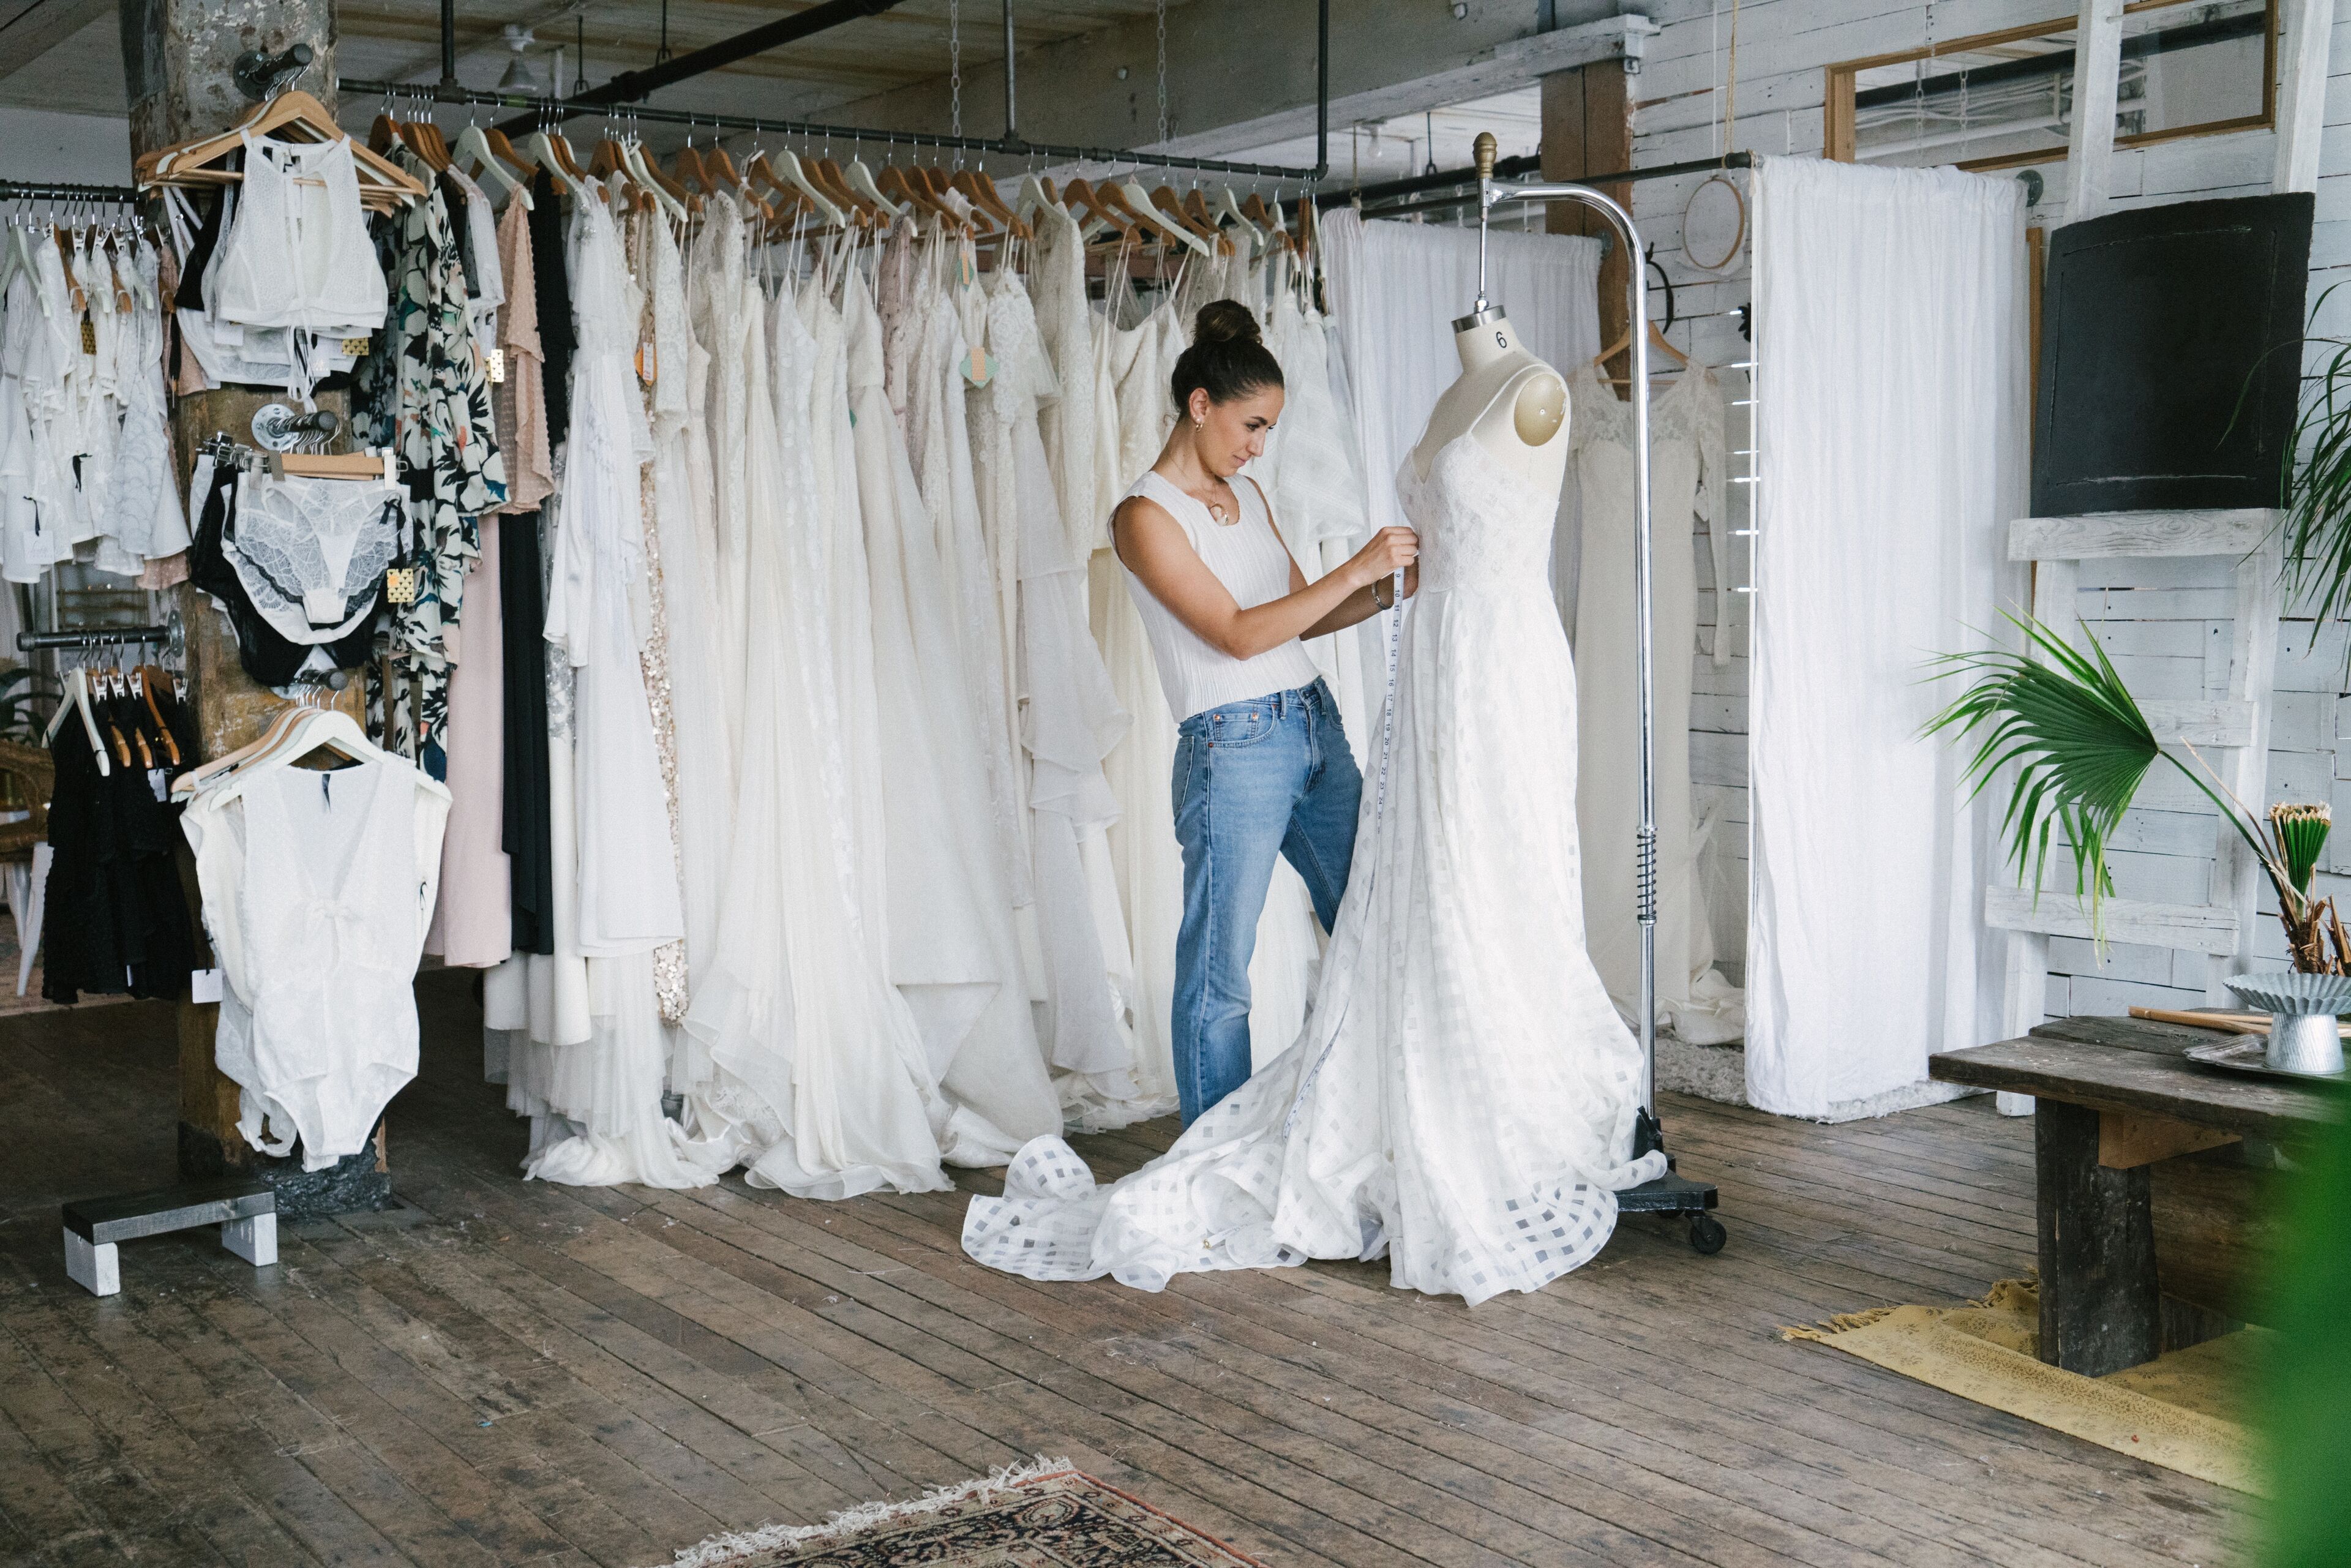 Una dona ajustant un vestit de núvia en una botiga amb diversos vestits al fons.